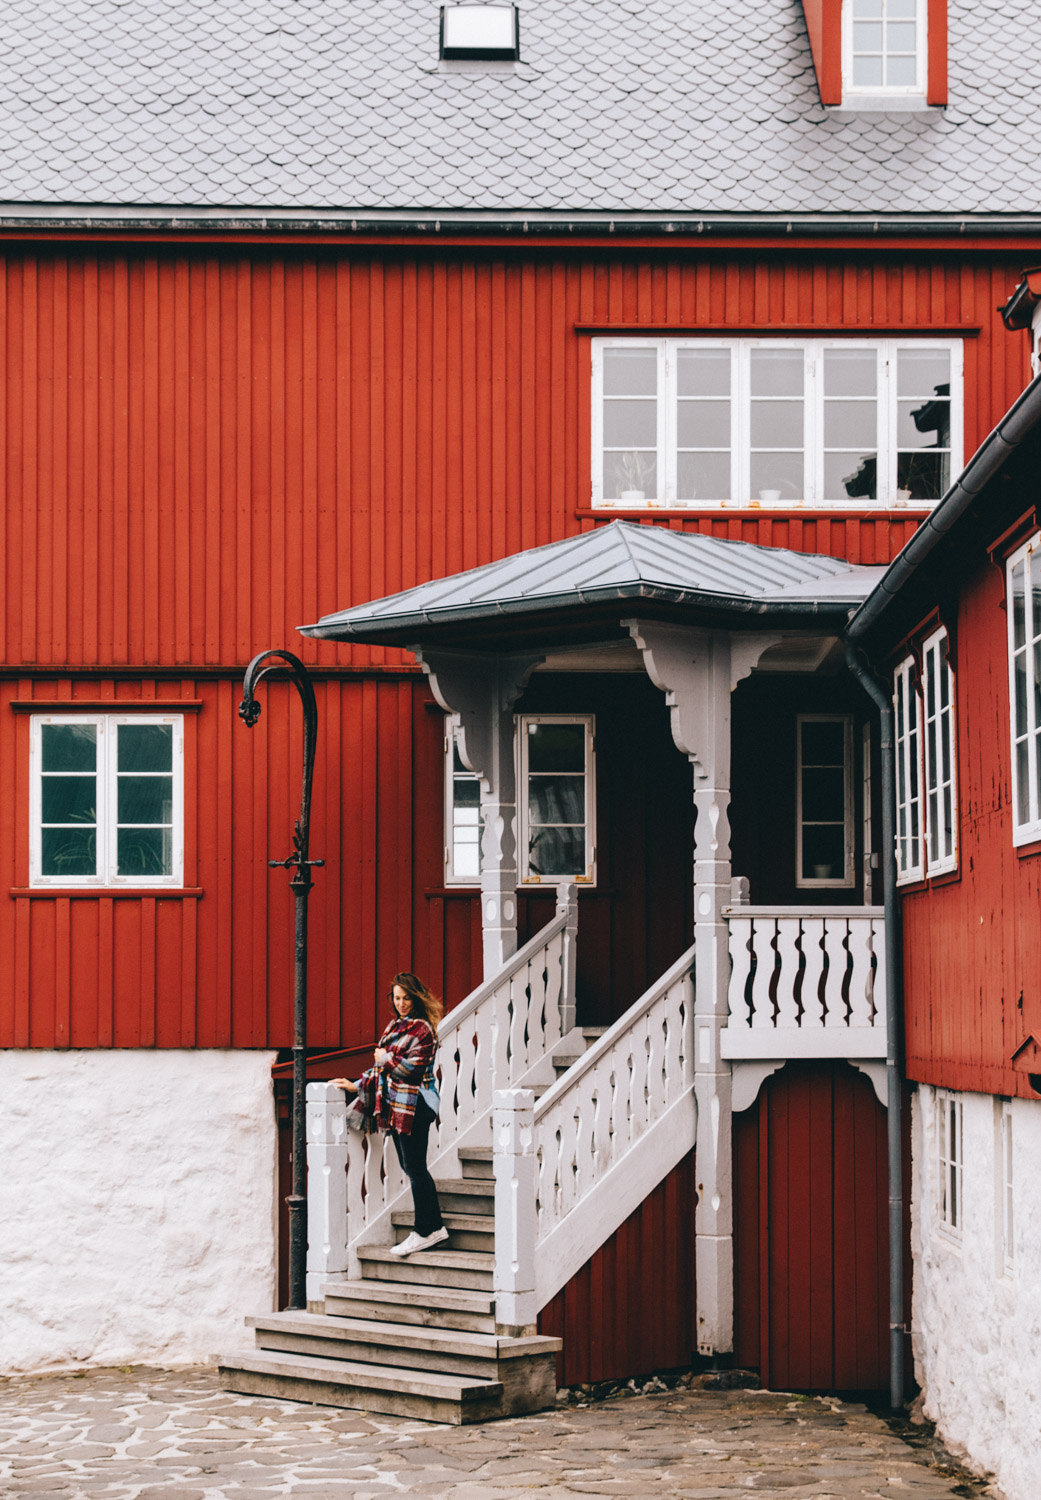 Things to do in Torshavn Faroe Islands - Tinganes